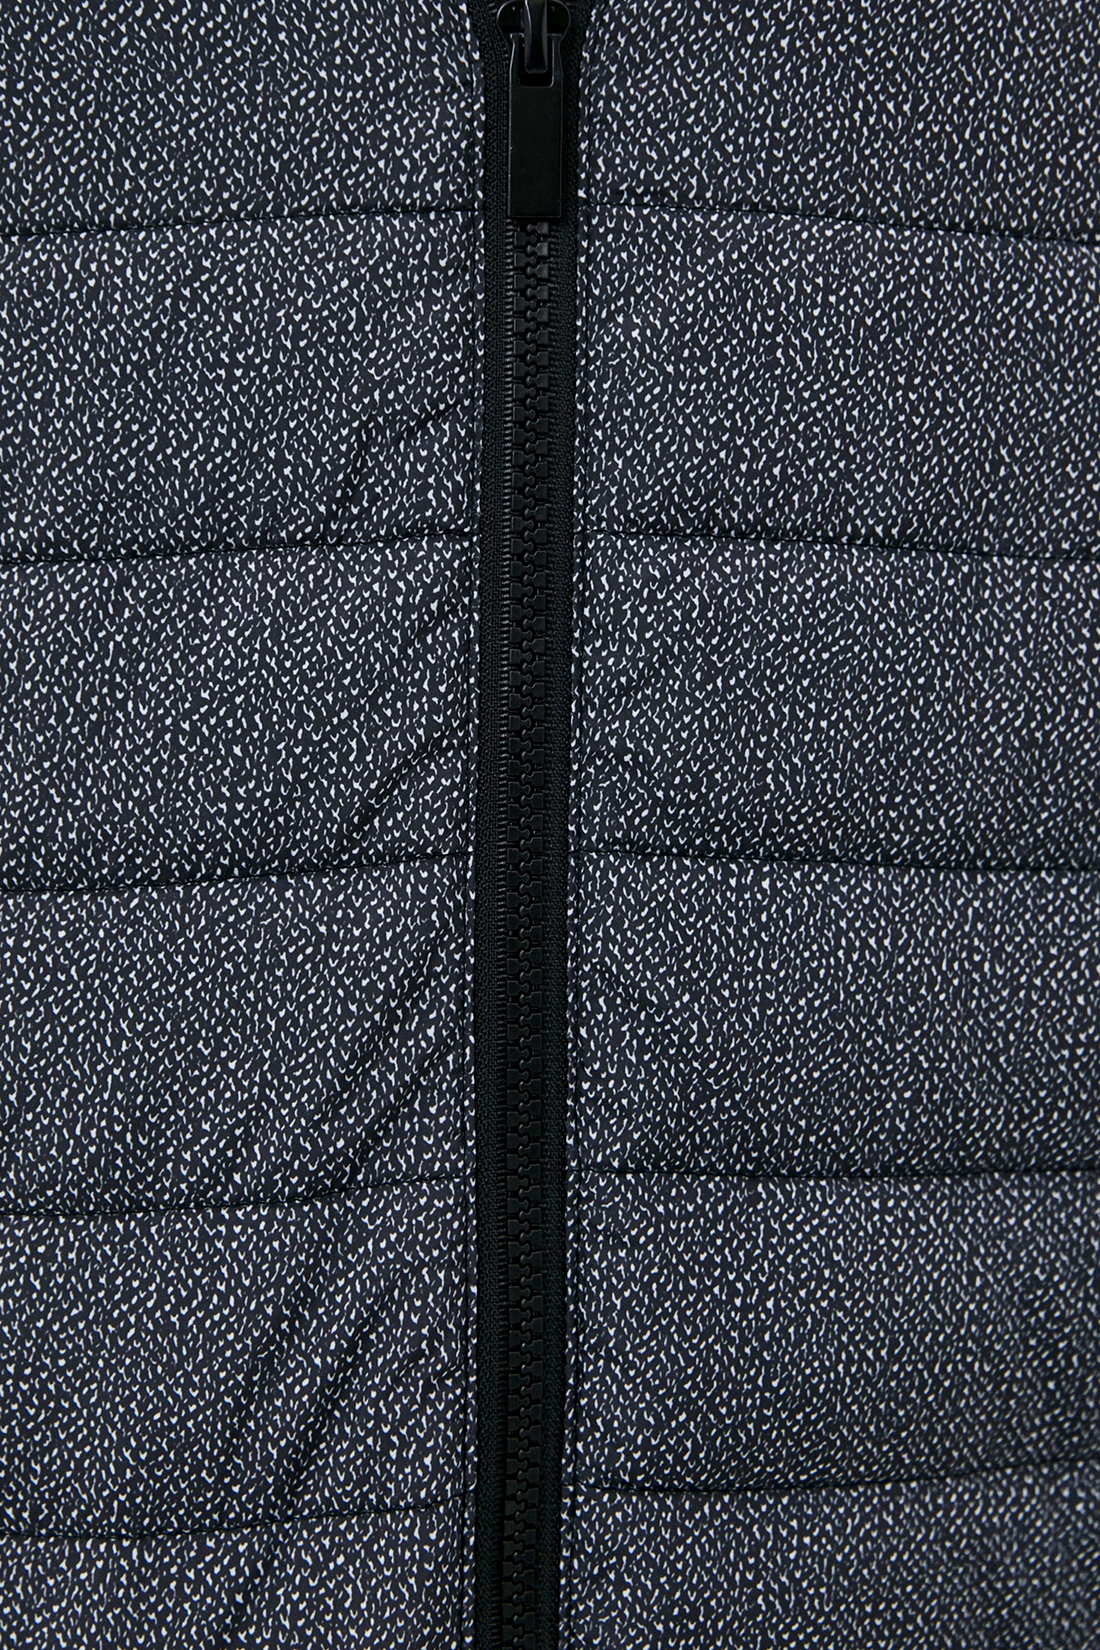 Куртка (Эко пух) (арт. baon B540519), размер M, цвет asphalt printed#серый Куртка (Эко пух) (арт. baon B540519) - фото 3